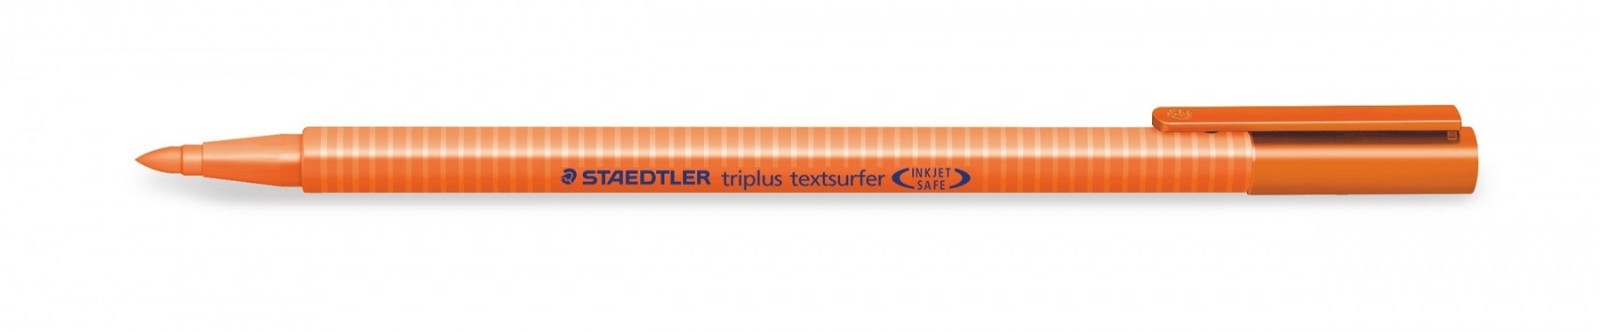 Staedtler Triplus Textsurfer 362 overstregningstus i farven orange